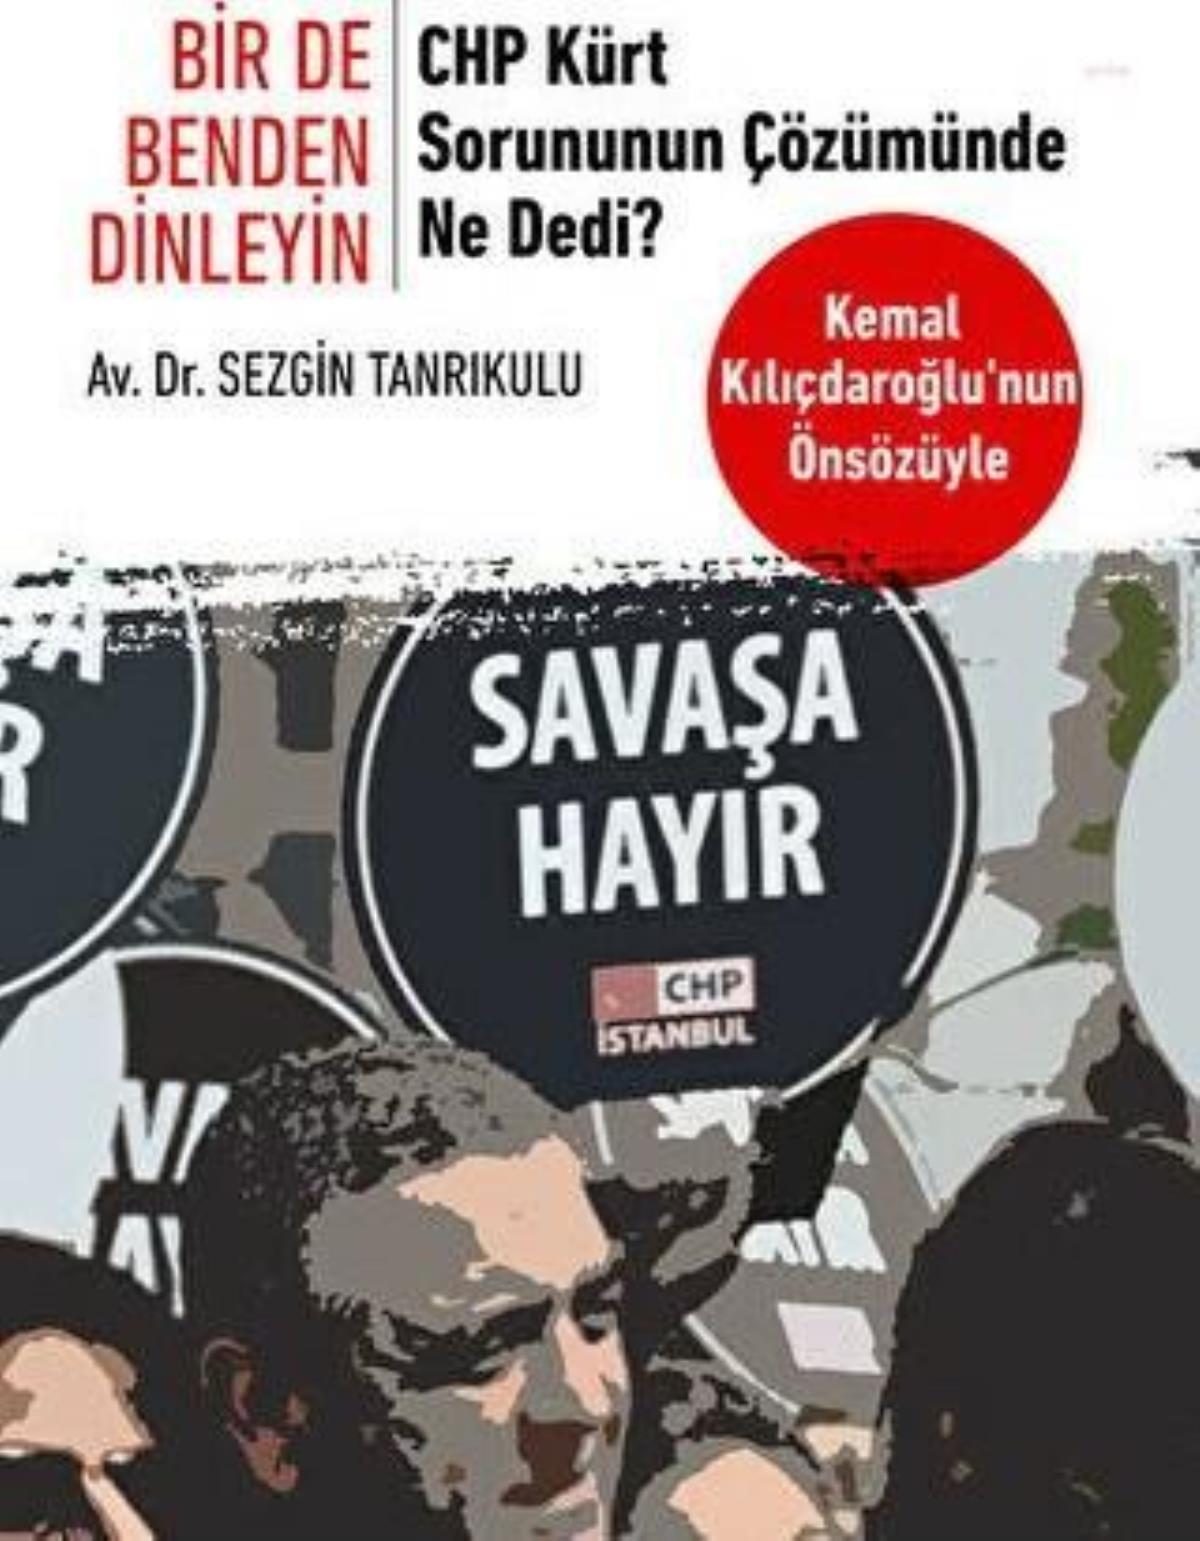 Kılıçdaroğlu: "Dün Olduğu Üzere Bugün de Kürt Problemini Demokratik Yollardan Çözmeye, Terörü Sonlandırmaya, Anaların Gözyaşlarını Dindirmeye Kararlıyız"